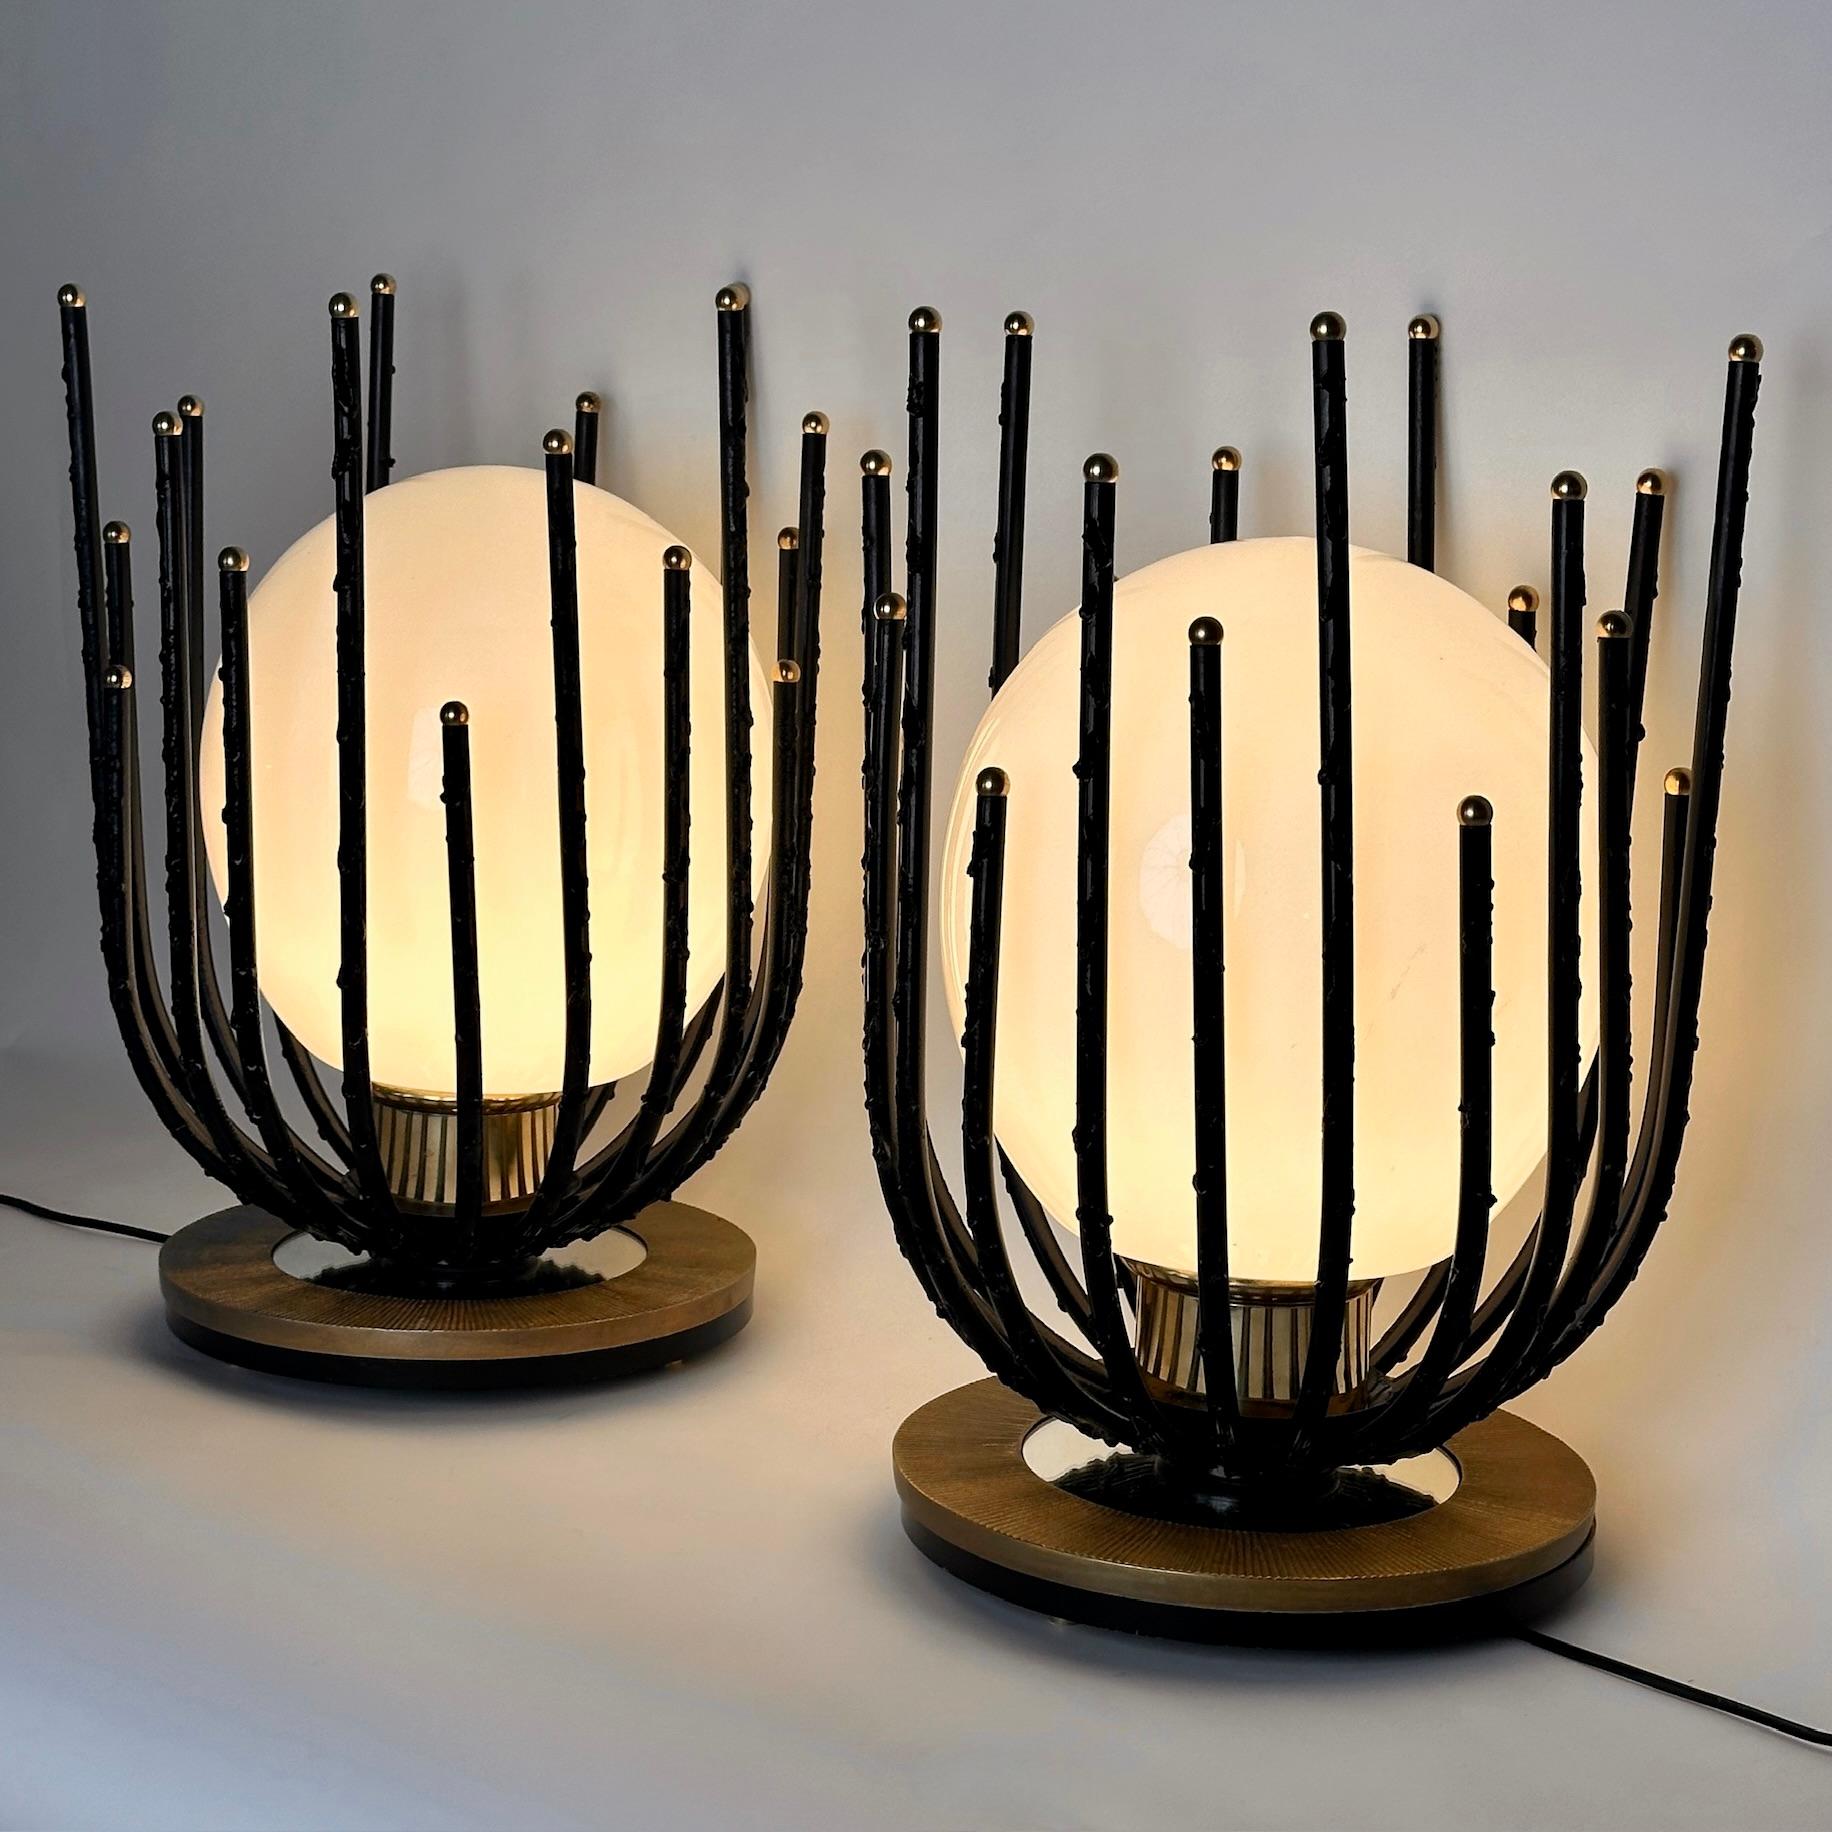 Diese brutalistisch-modernen Tischlampen passen in fast jede Umgebung und eignen sich perfekt für den Nachttisch oder für jeden anderen Raum.
Die Mischung aus schwarzen Eisenrohren, Messing und weißem Opalglas verleiht diesen Lampen eine starke und